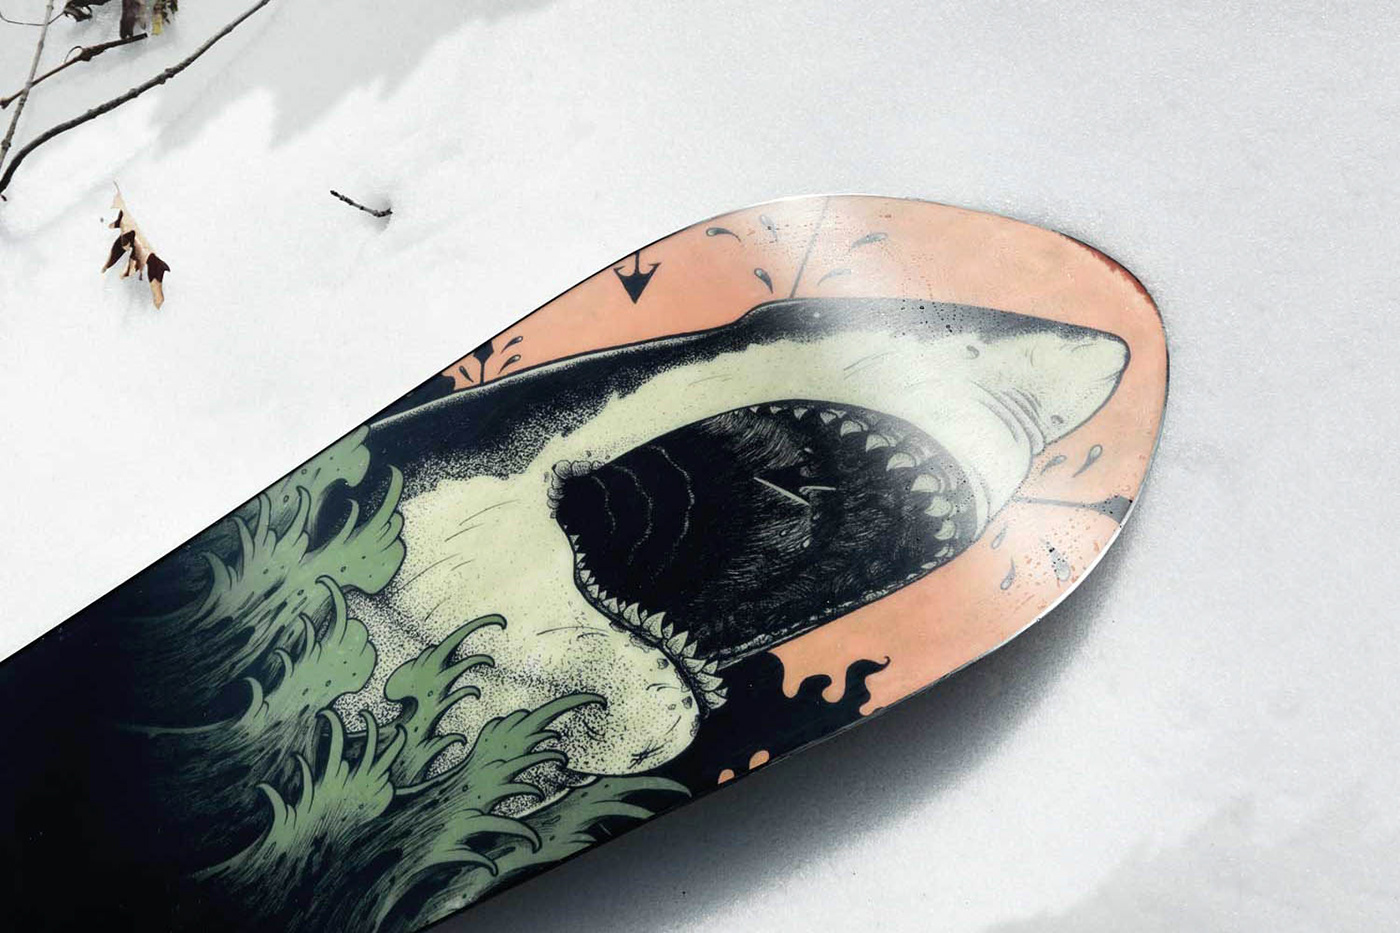 ink drawing stippling ink tattoo design snowboard snowboard design shark pen drawing Tattoo Art tattoo